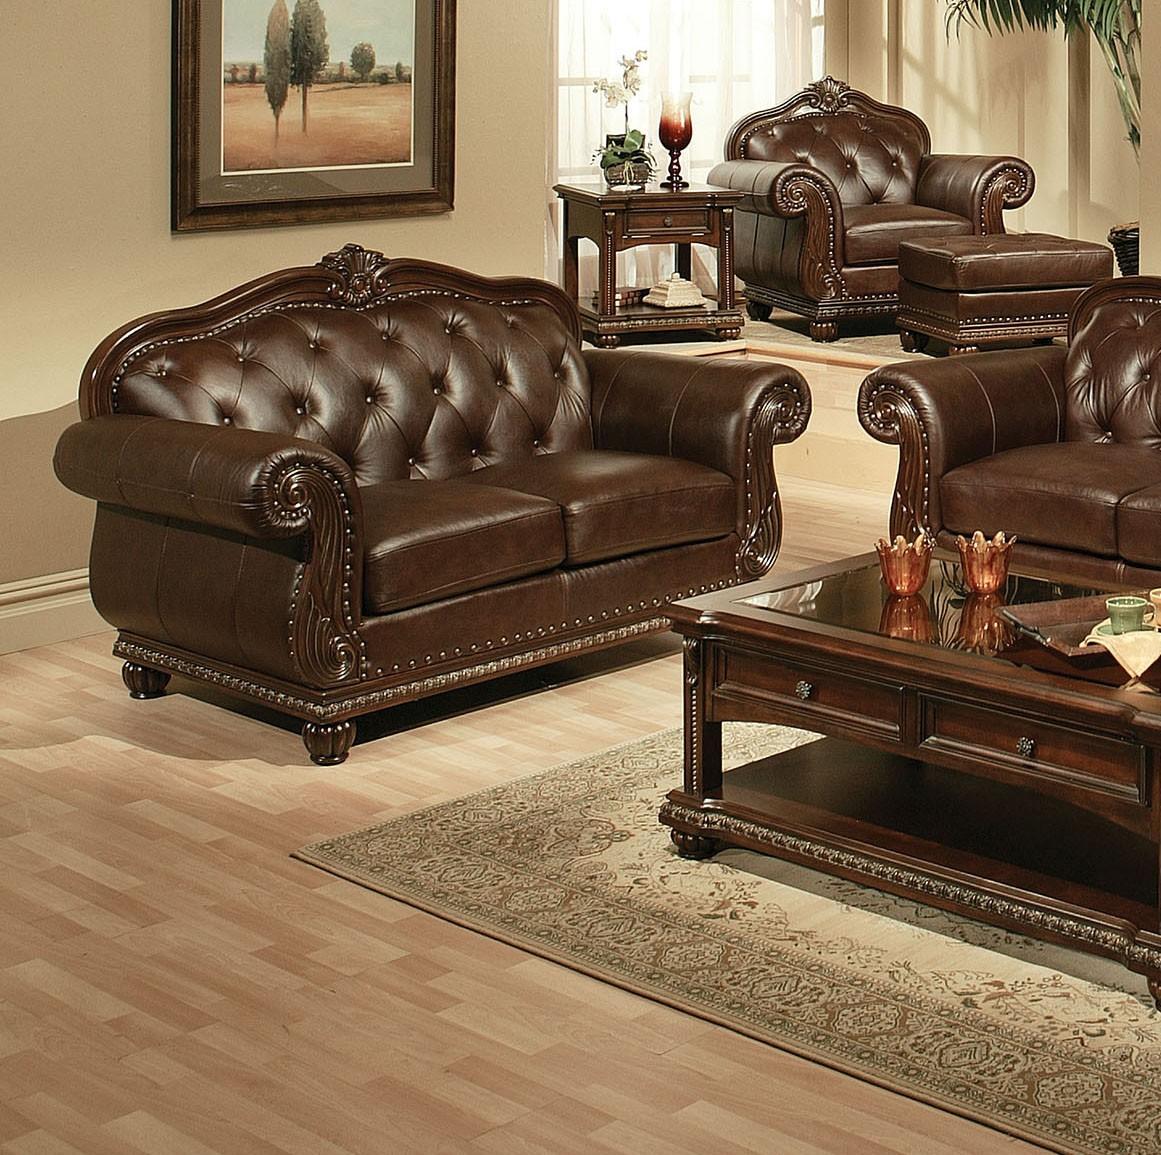 

        
Acme Furniture Anondale 15030 Sofa Cherry/Espresso Top grain leather 00840412023309
